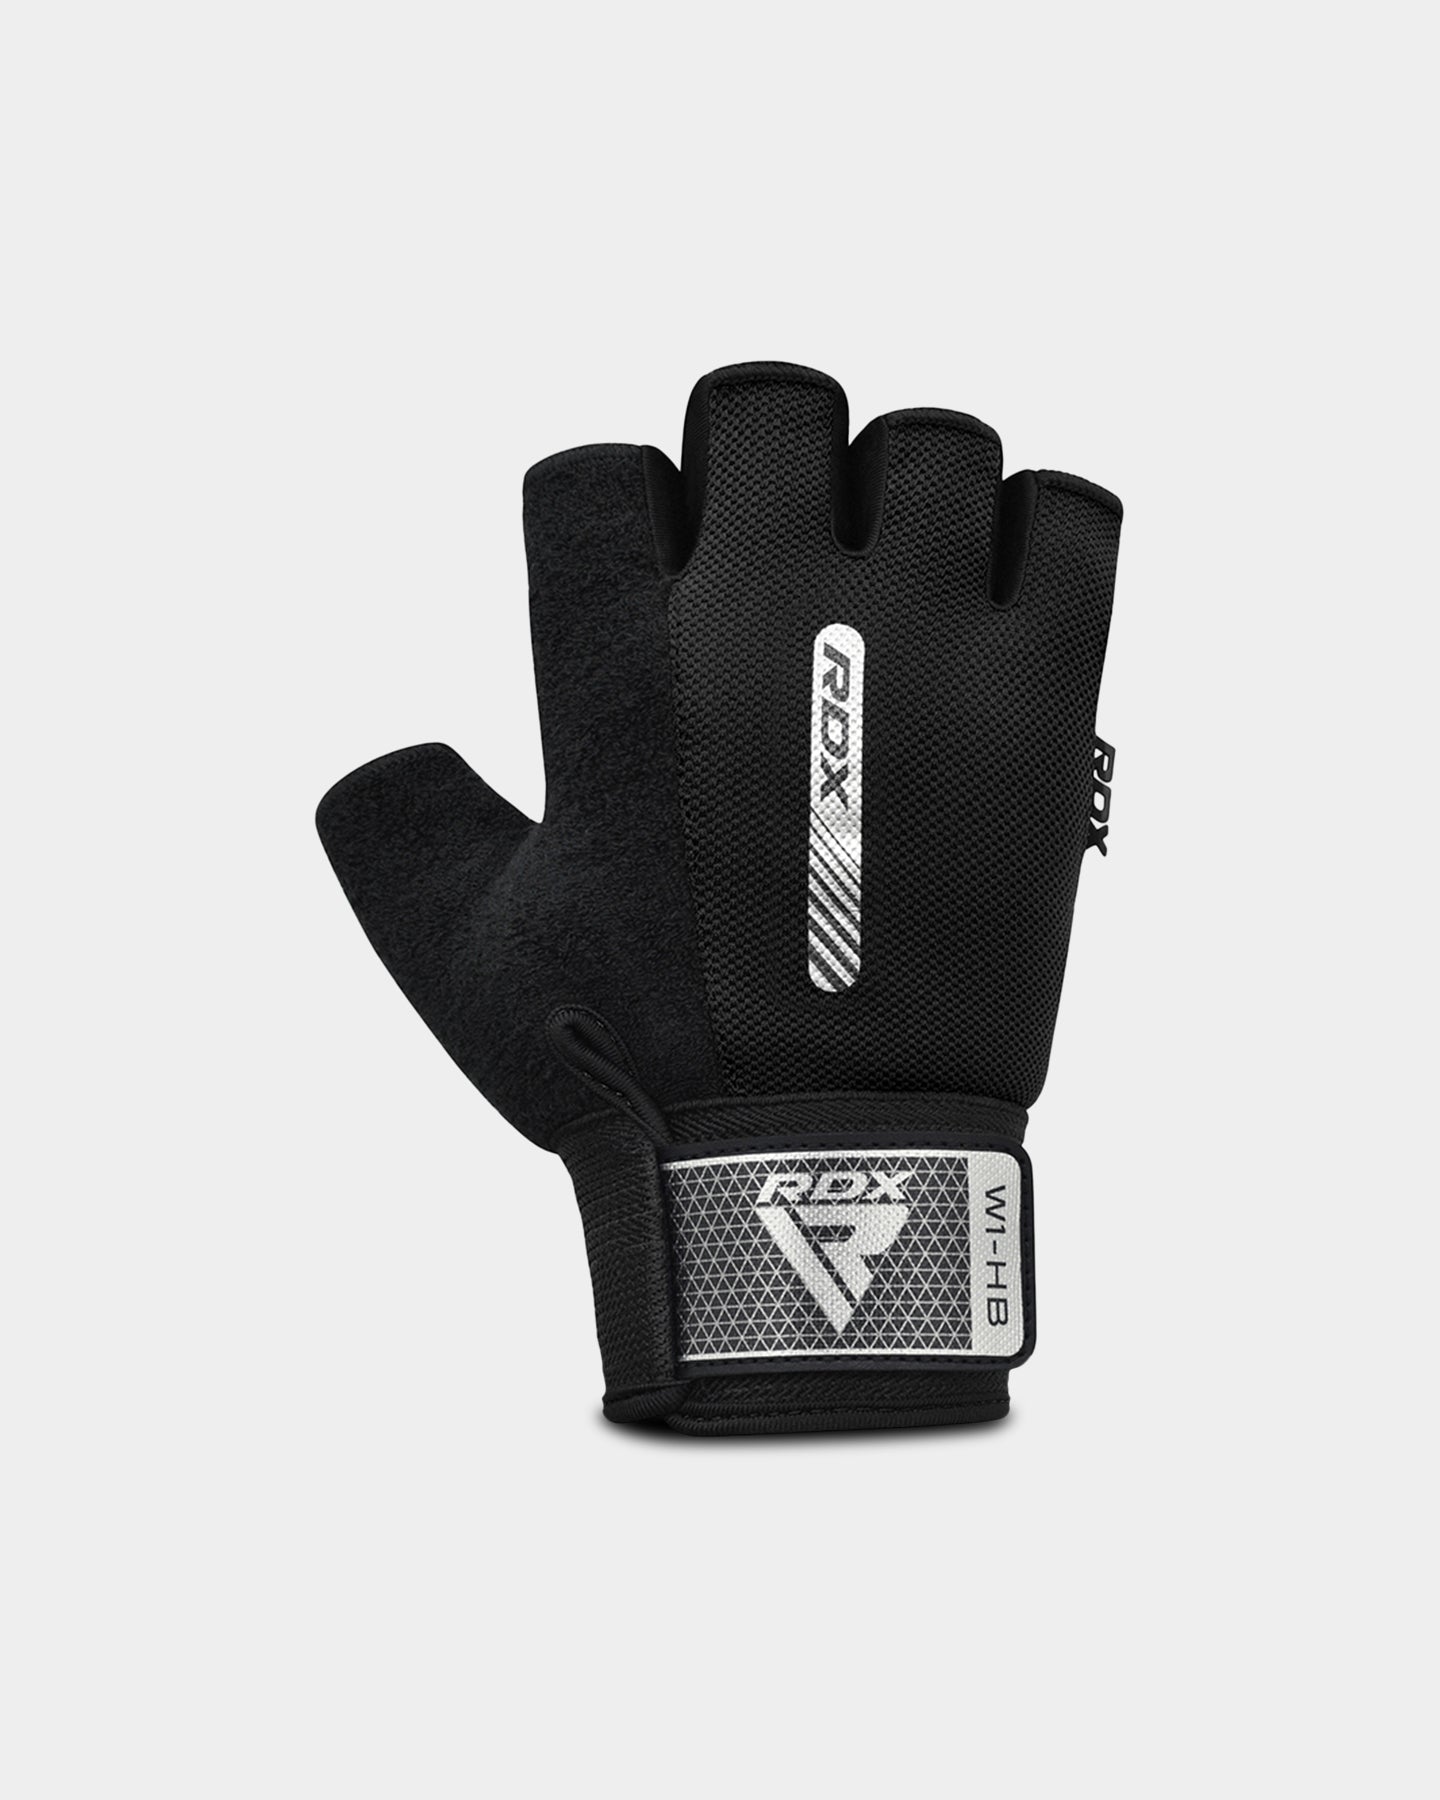 RDX Sports W1 Gym Workout Gloves, XL, Black A2